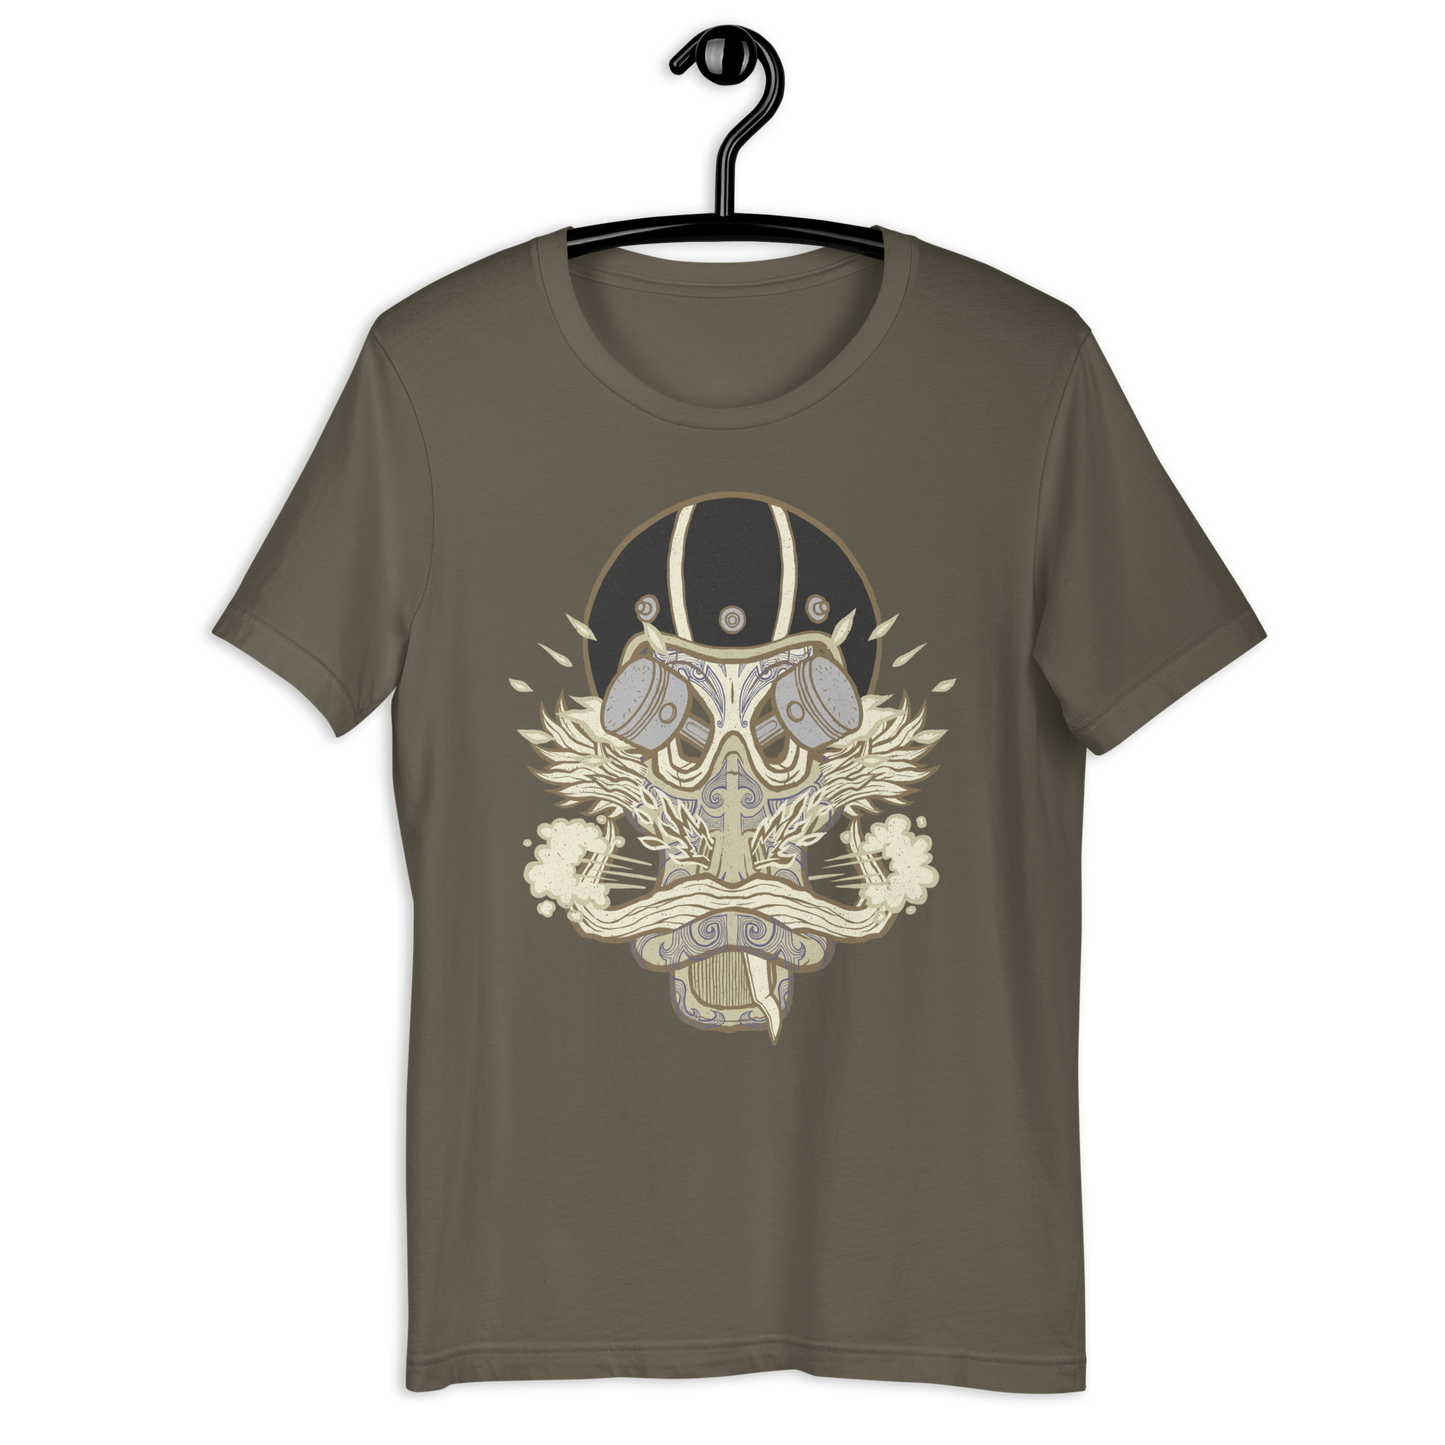 No 012 Wierd Duck Skull collection t-shirt